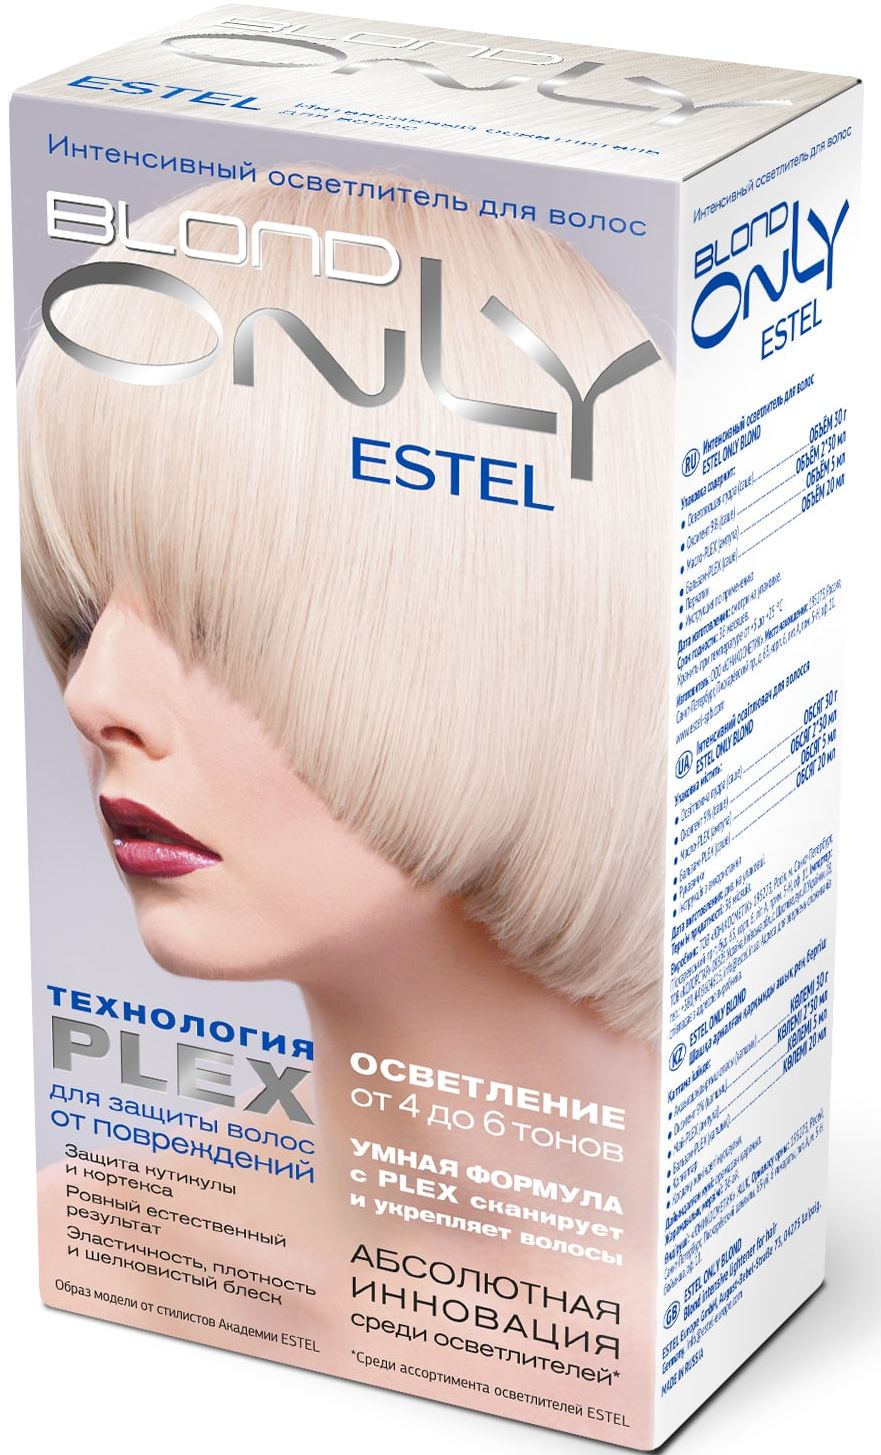 Blonde осветляю. OSB интенсивный осветлитель для волос Estel only blond. Estel обесцвечивание до 6 тонов. Estel осветление осветлитель д/волос интенсивный Estel only blond. Эстель. Only blond осветлитель.